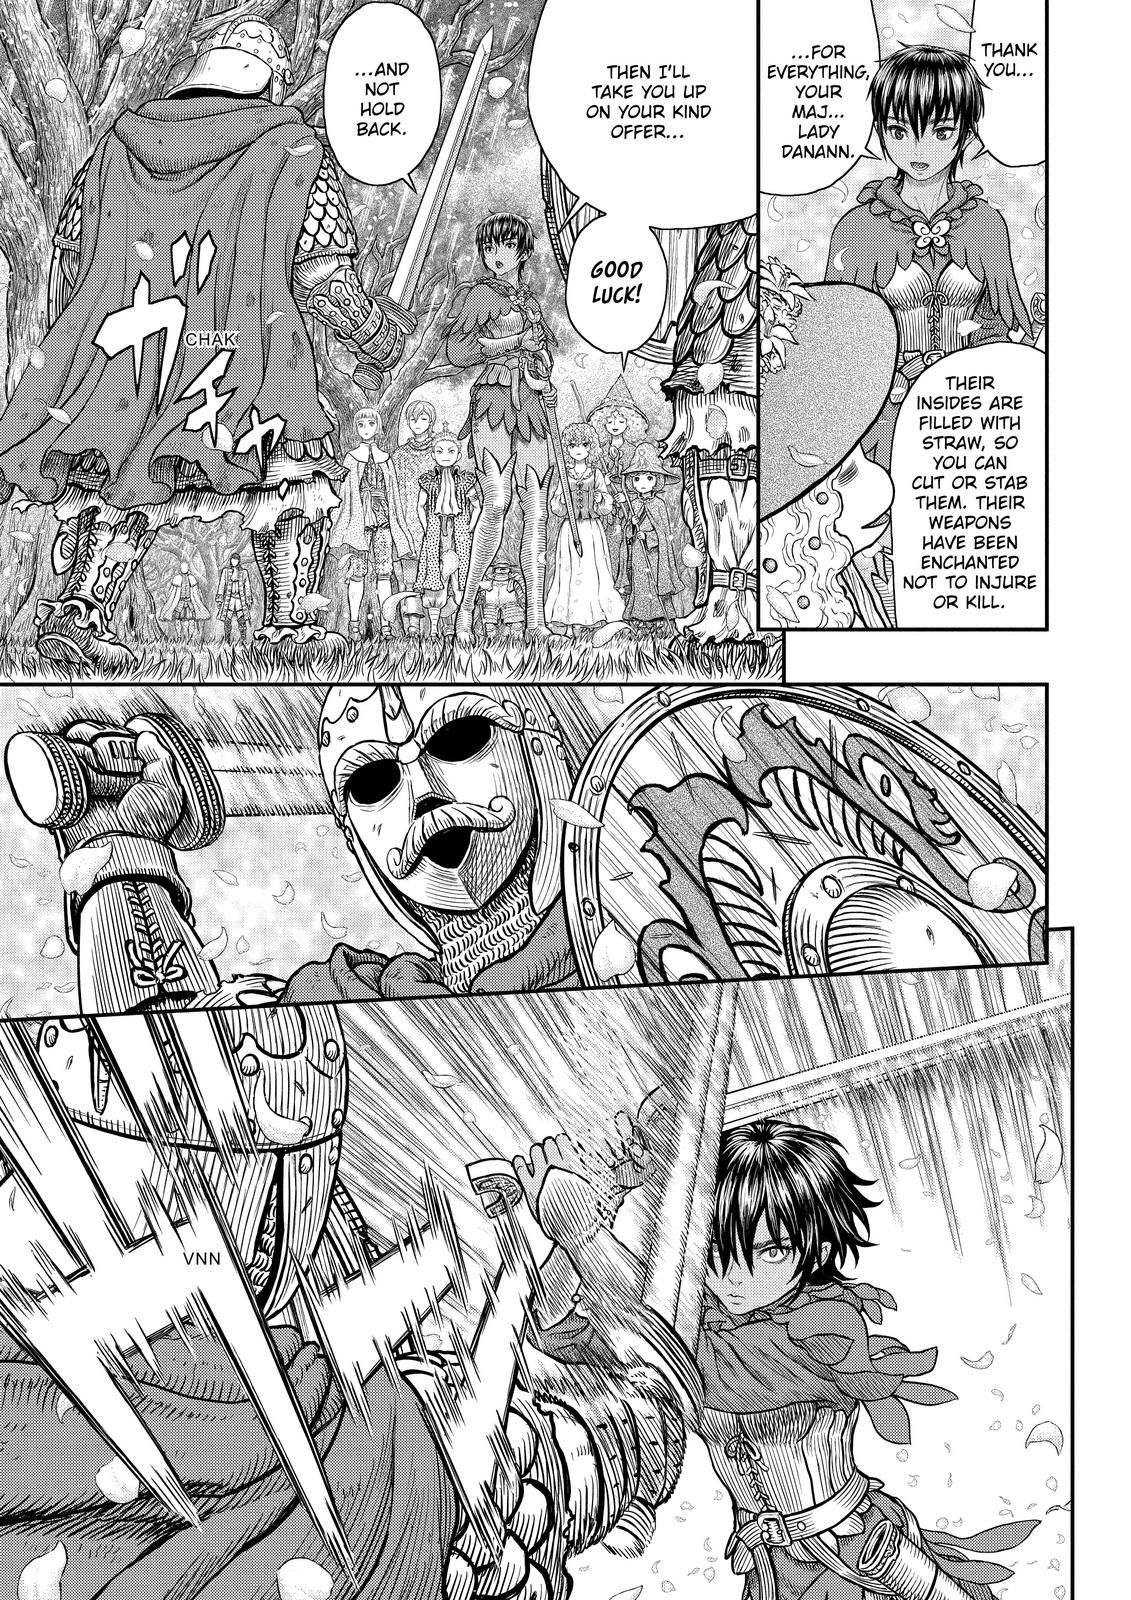 Berserk Manga Chapter 359 image 07